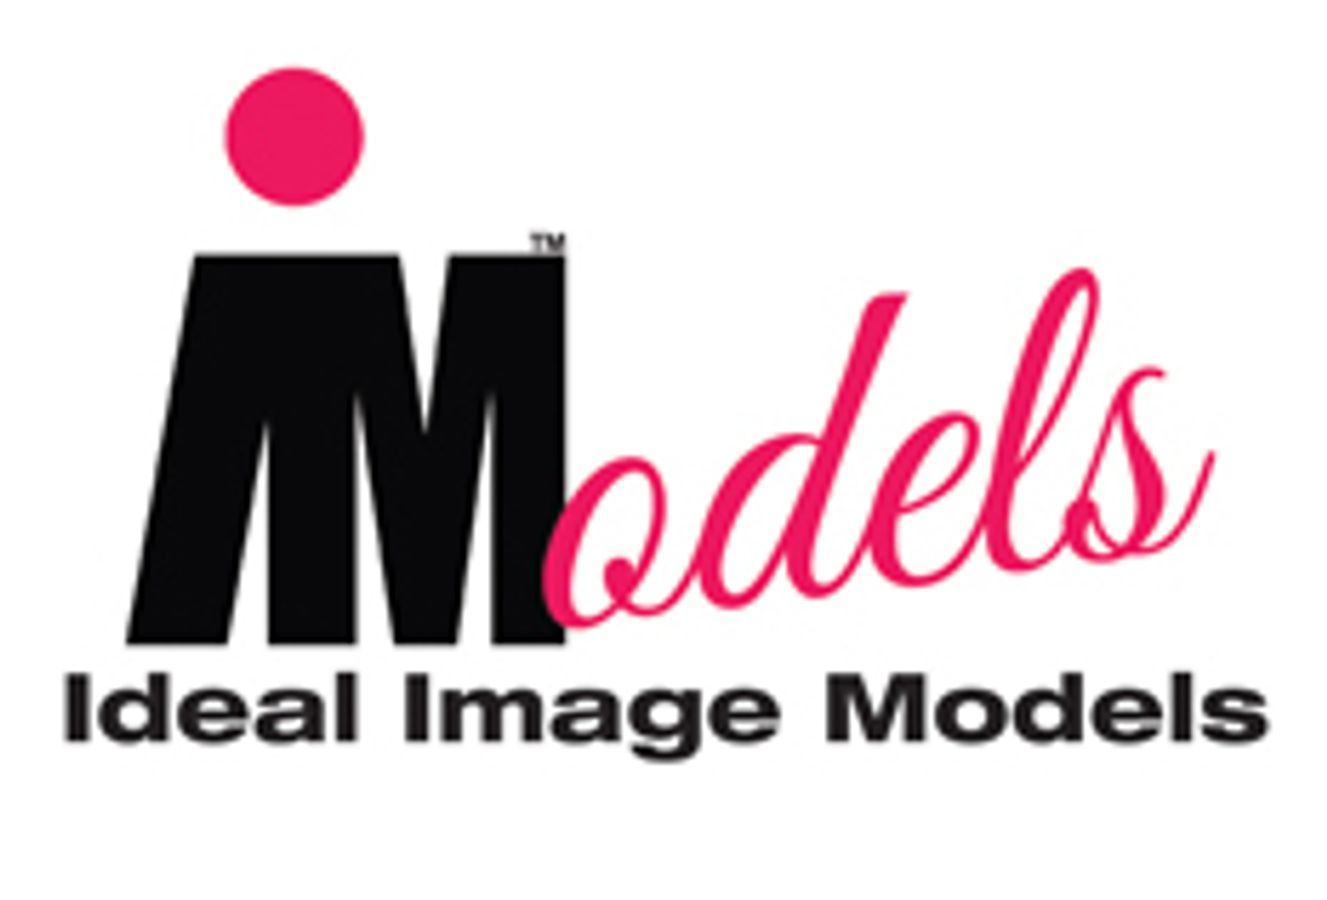 Ideal Image Models